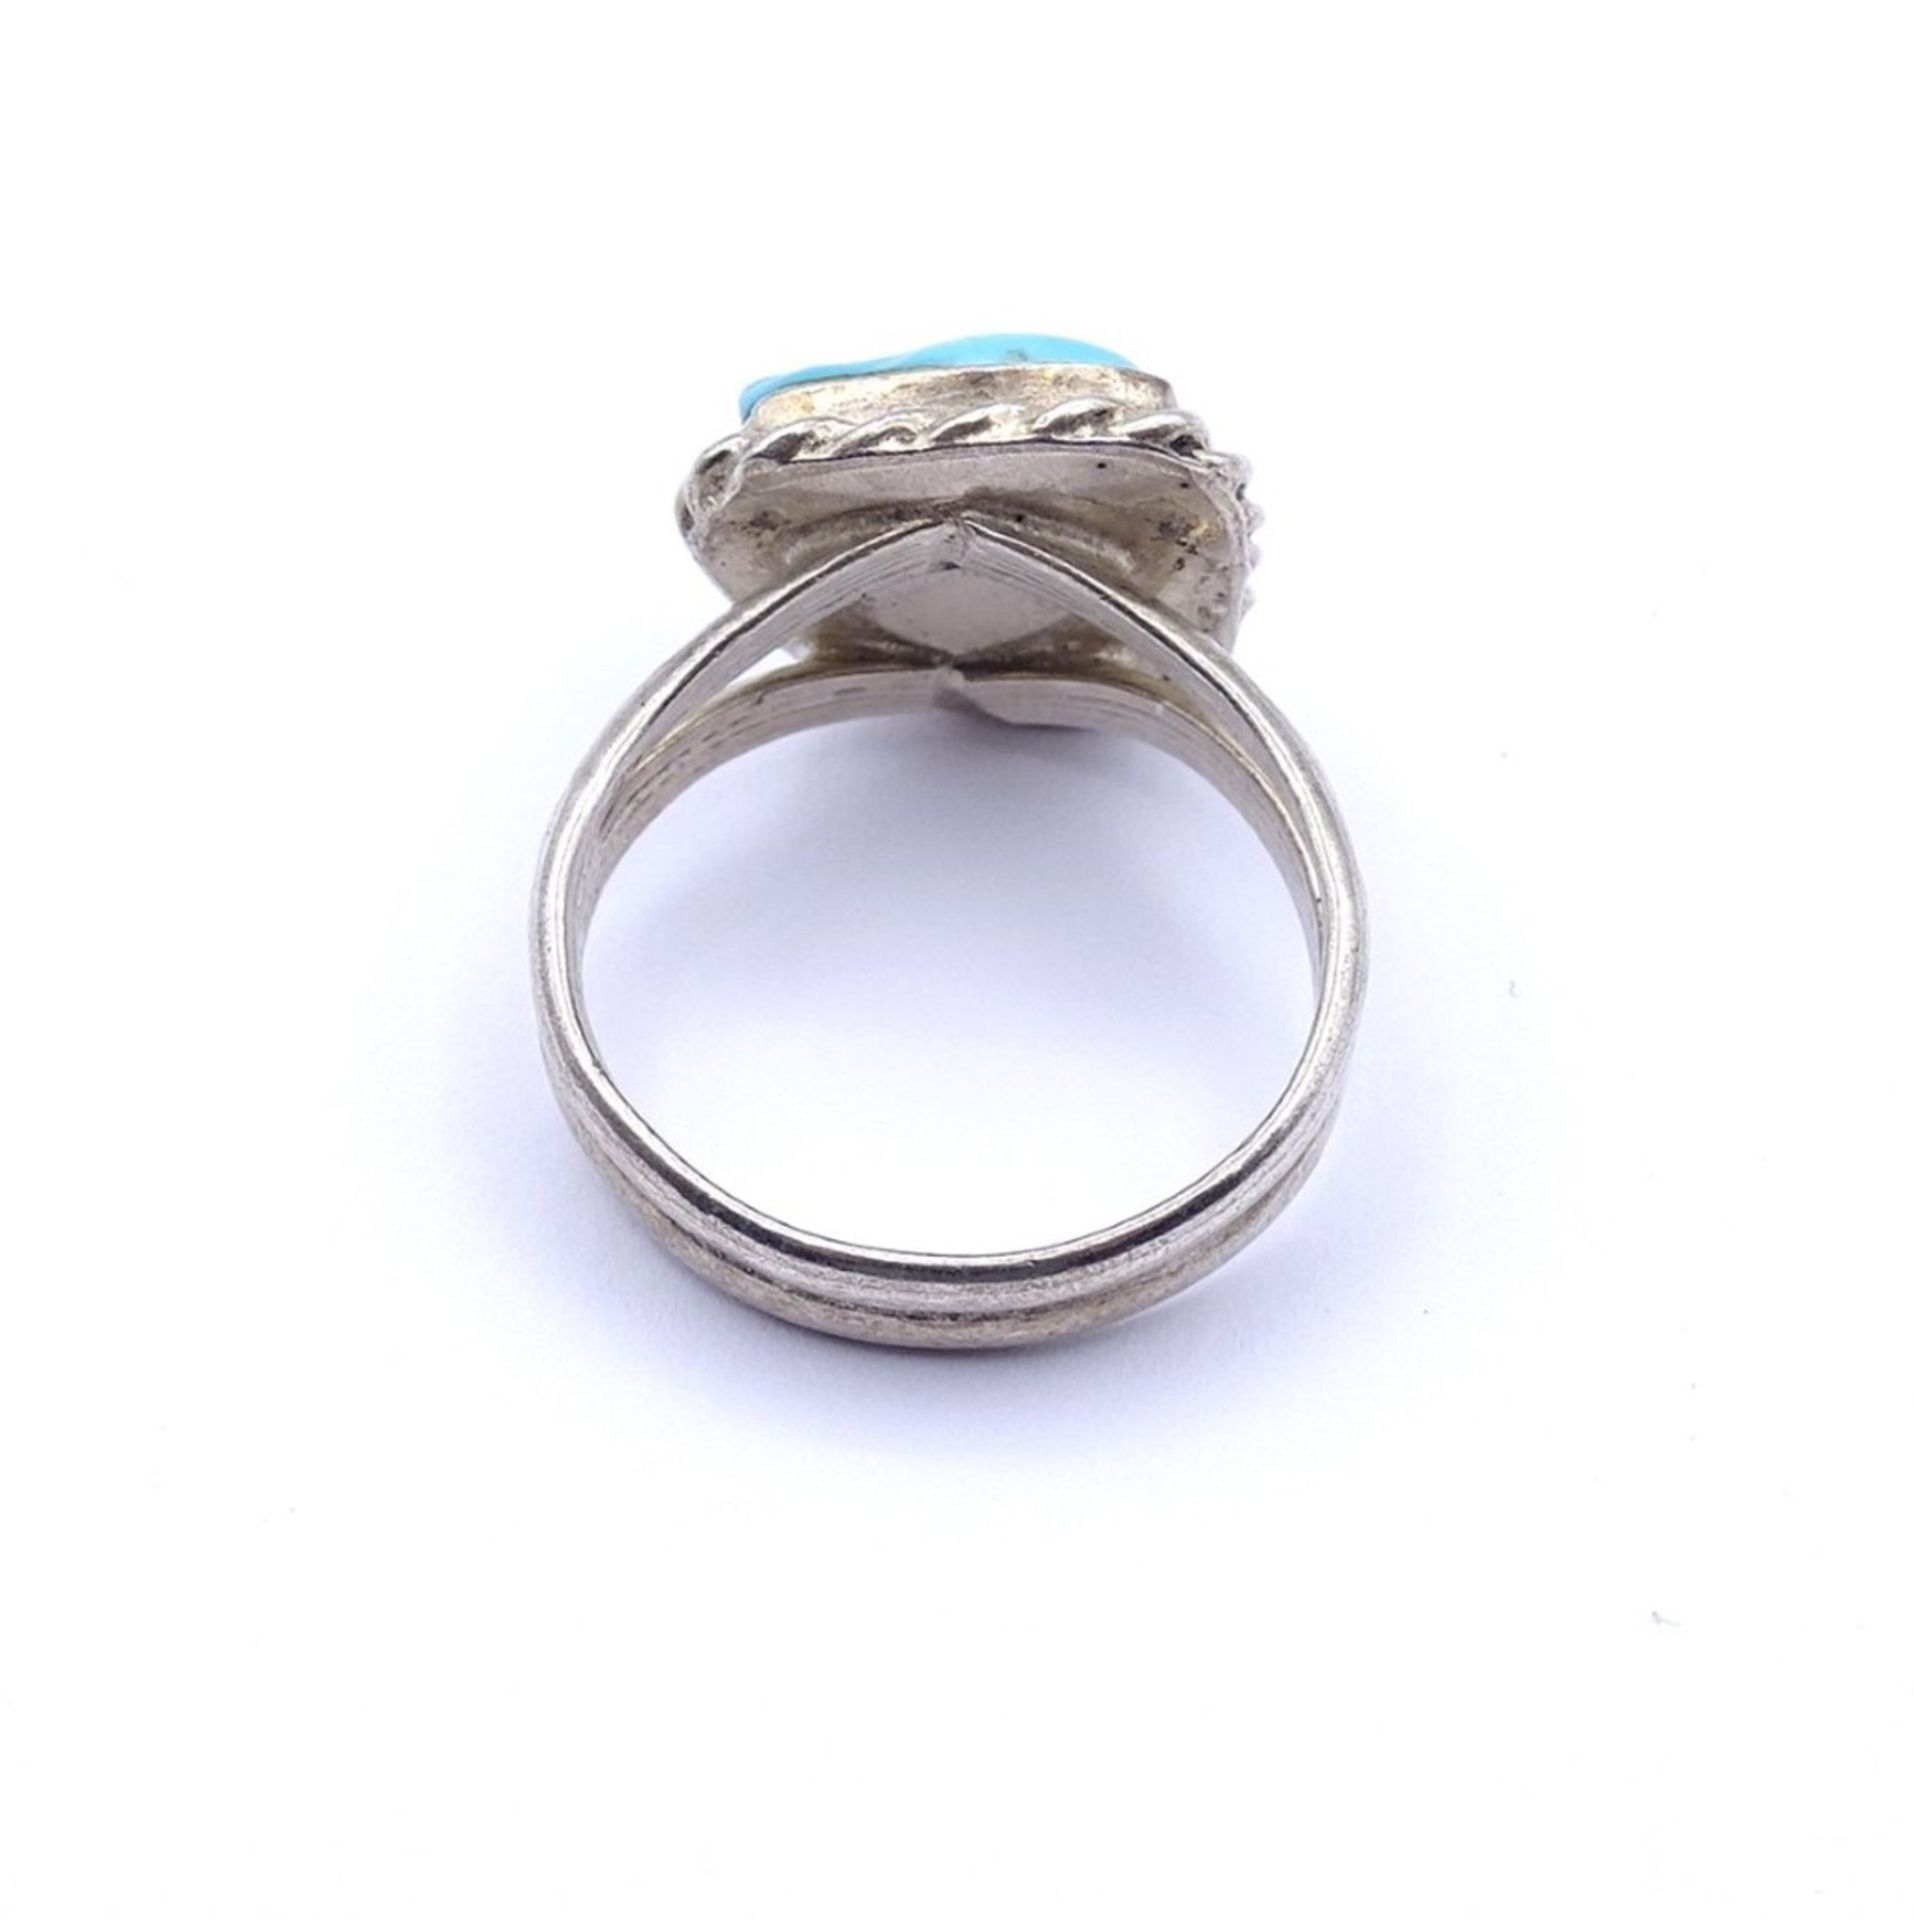 Silber Ring mit türkisen Stein, Silber gepr. 6,4gr.,RG 60 - Image 4 of 4